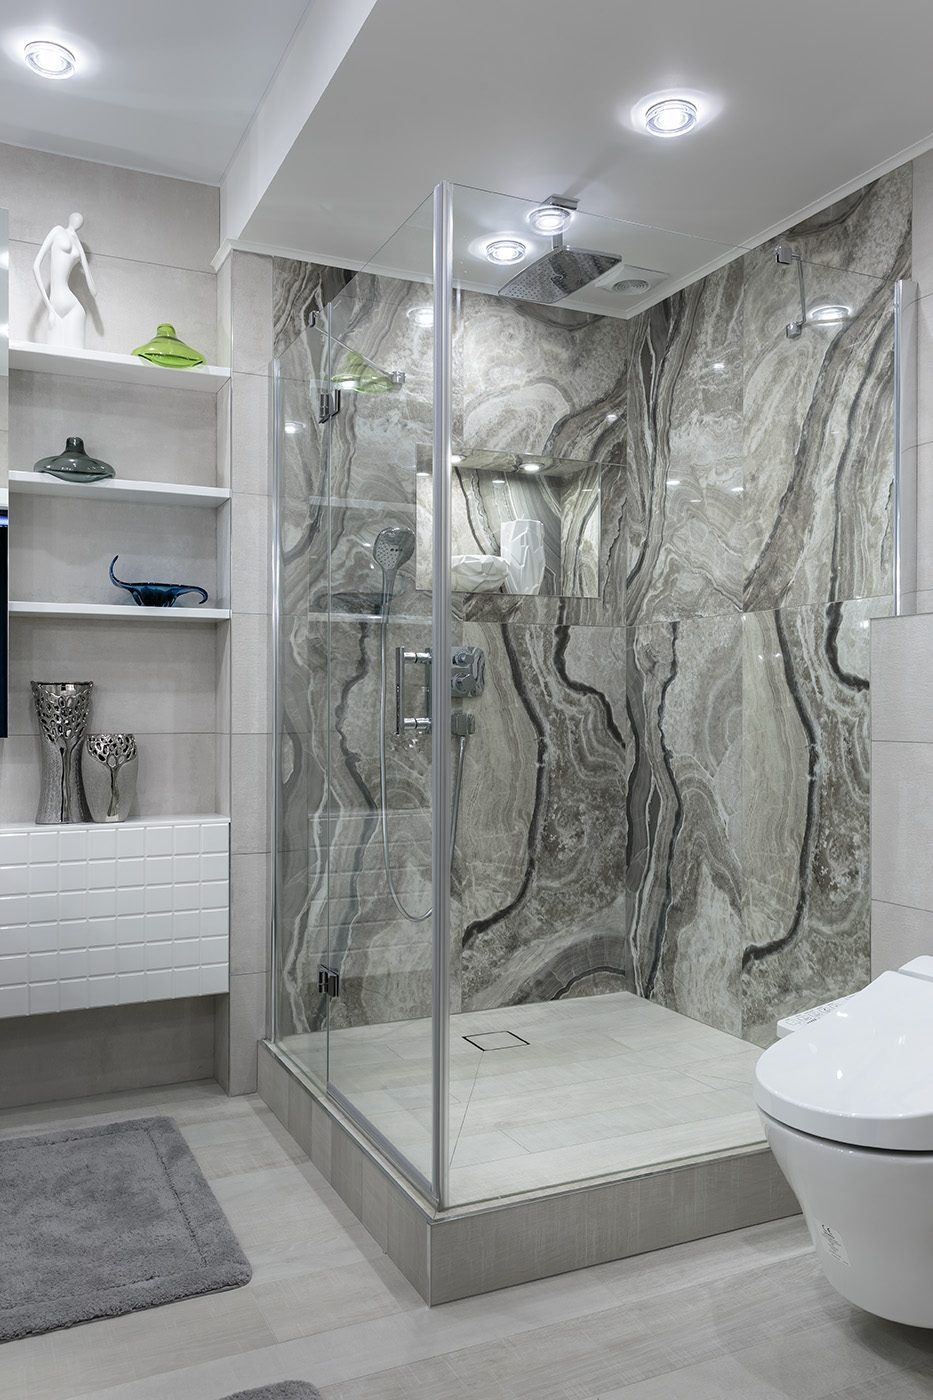 Дизайн интерьера ванной комнаты с душевой кабиной